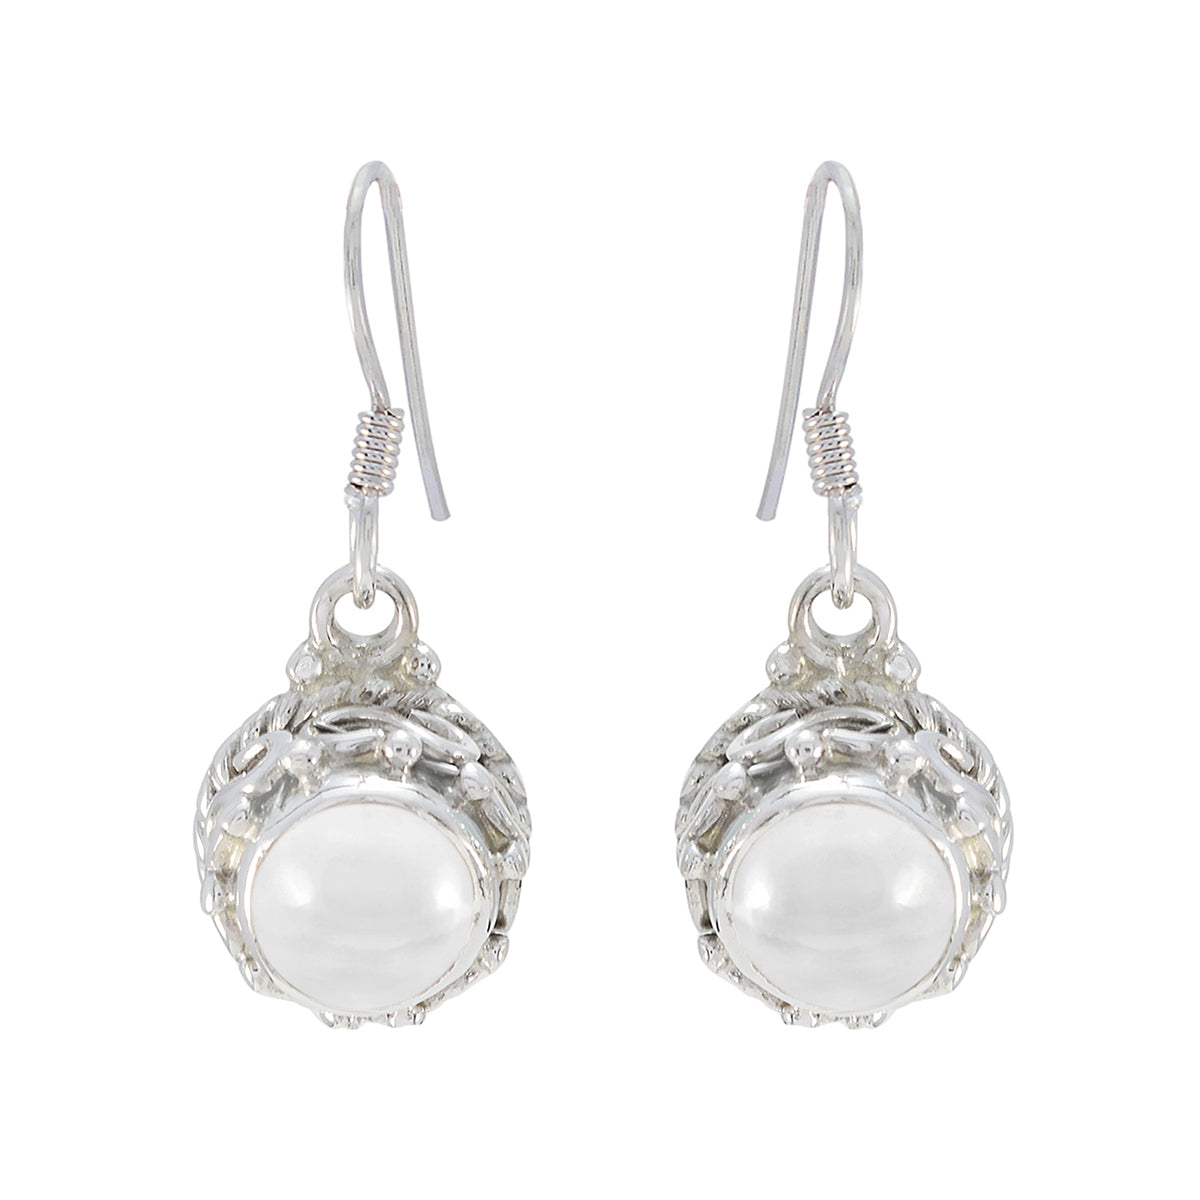 Riyo Pleasing Sterling Silver Earring For Girl Crystal Quartz Earring Bezel Setting White Earring Dangle Earring